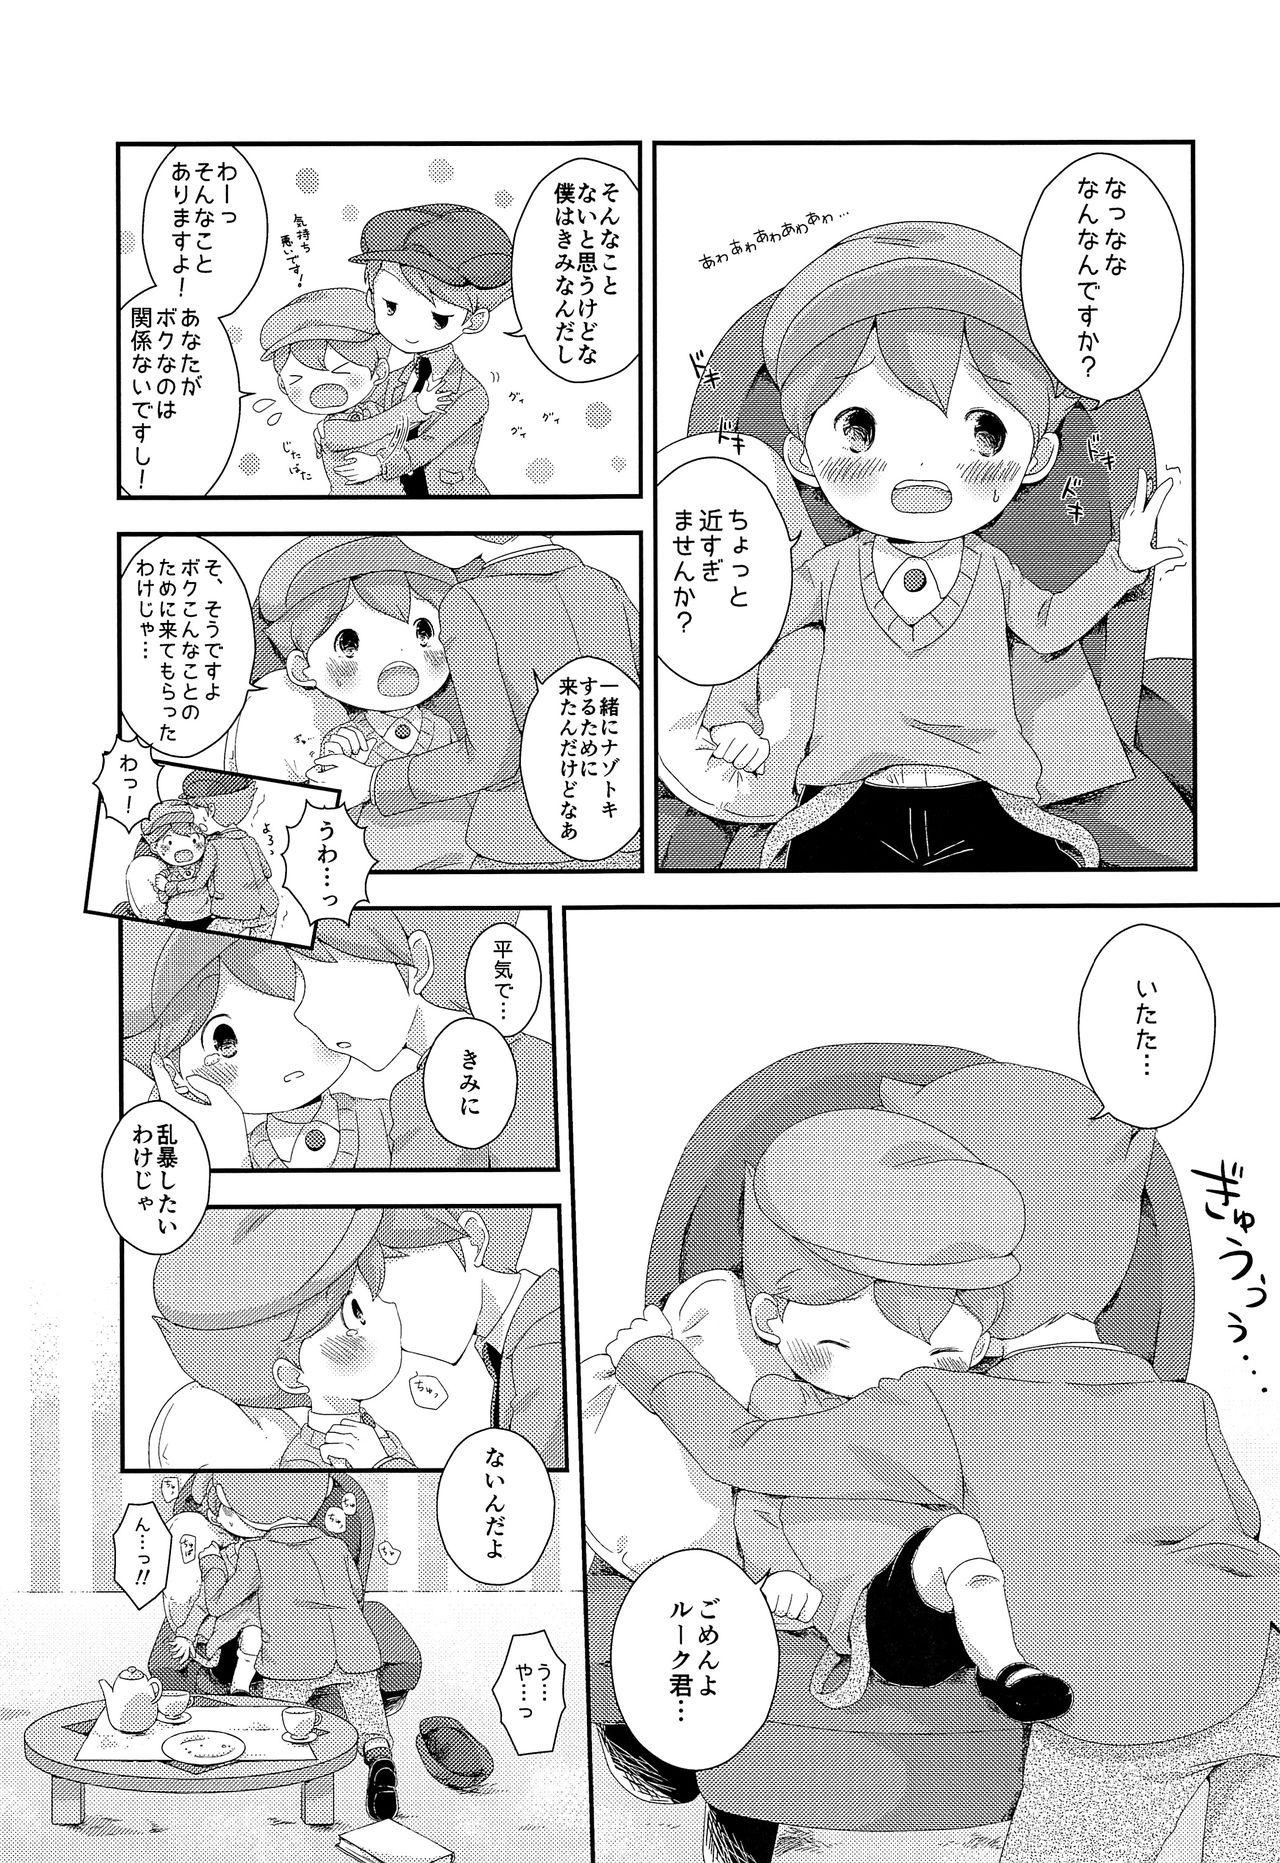 Adorable Kimi to Boku to de Ai toka Koi toka - Professor layton Flagra - Page 6